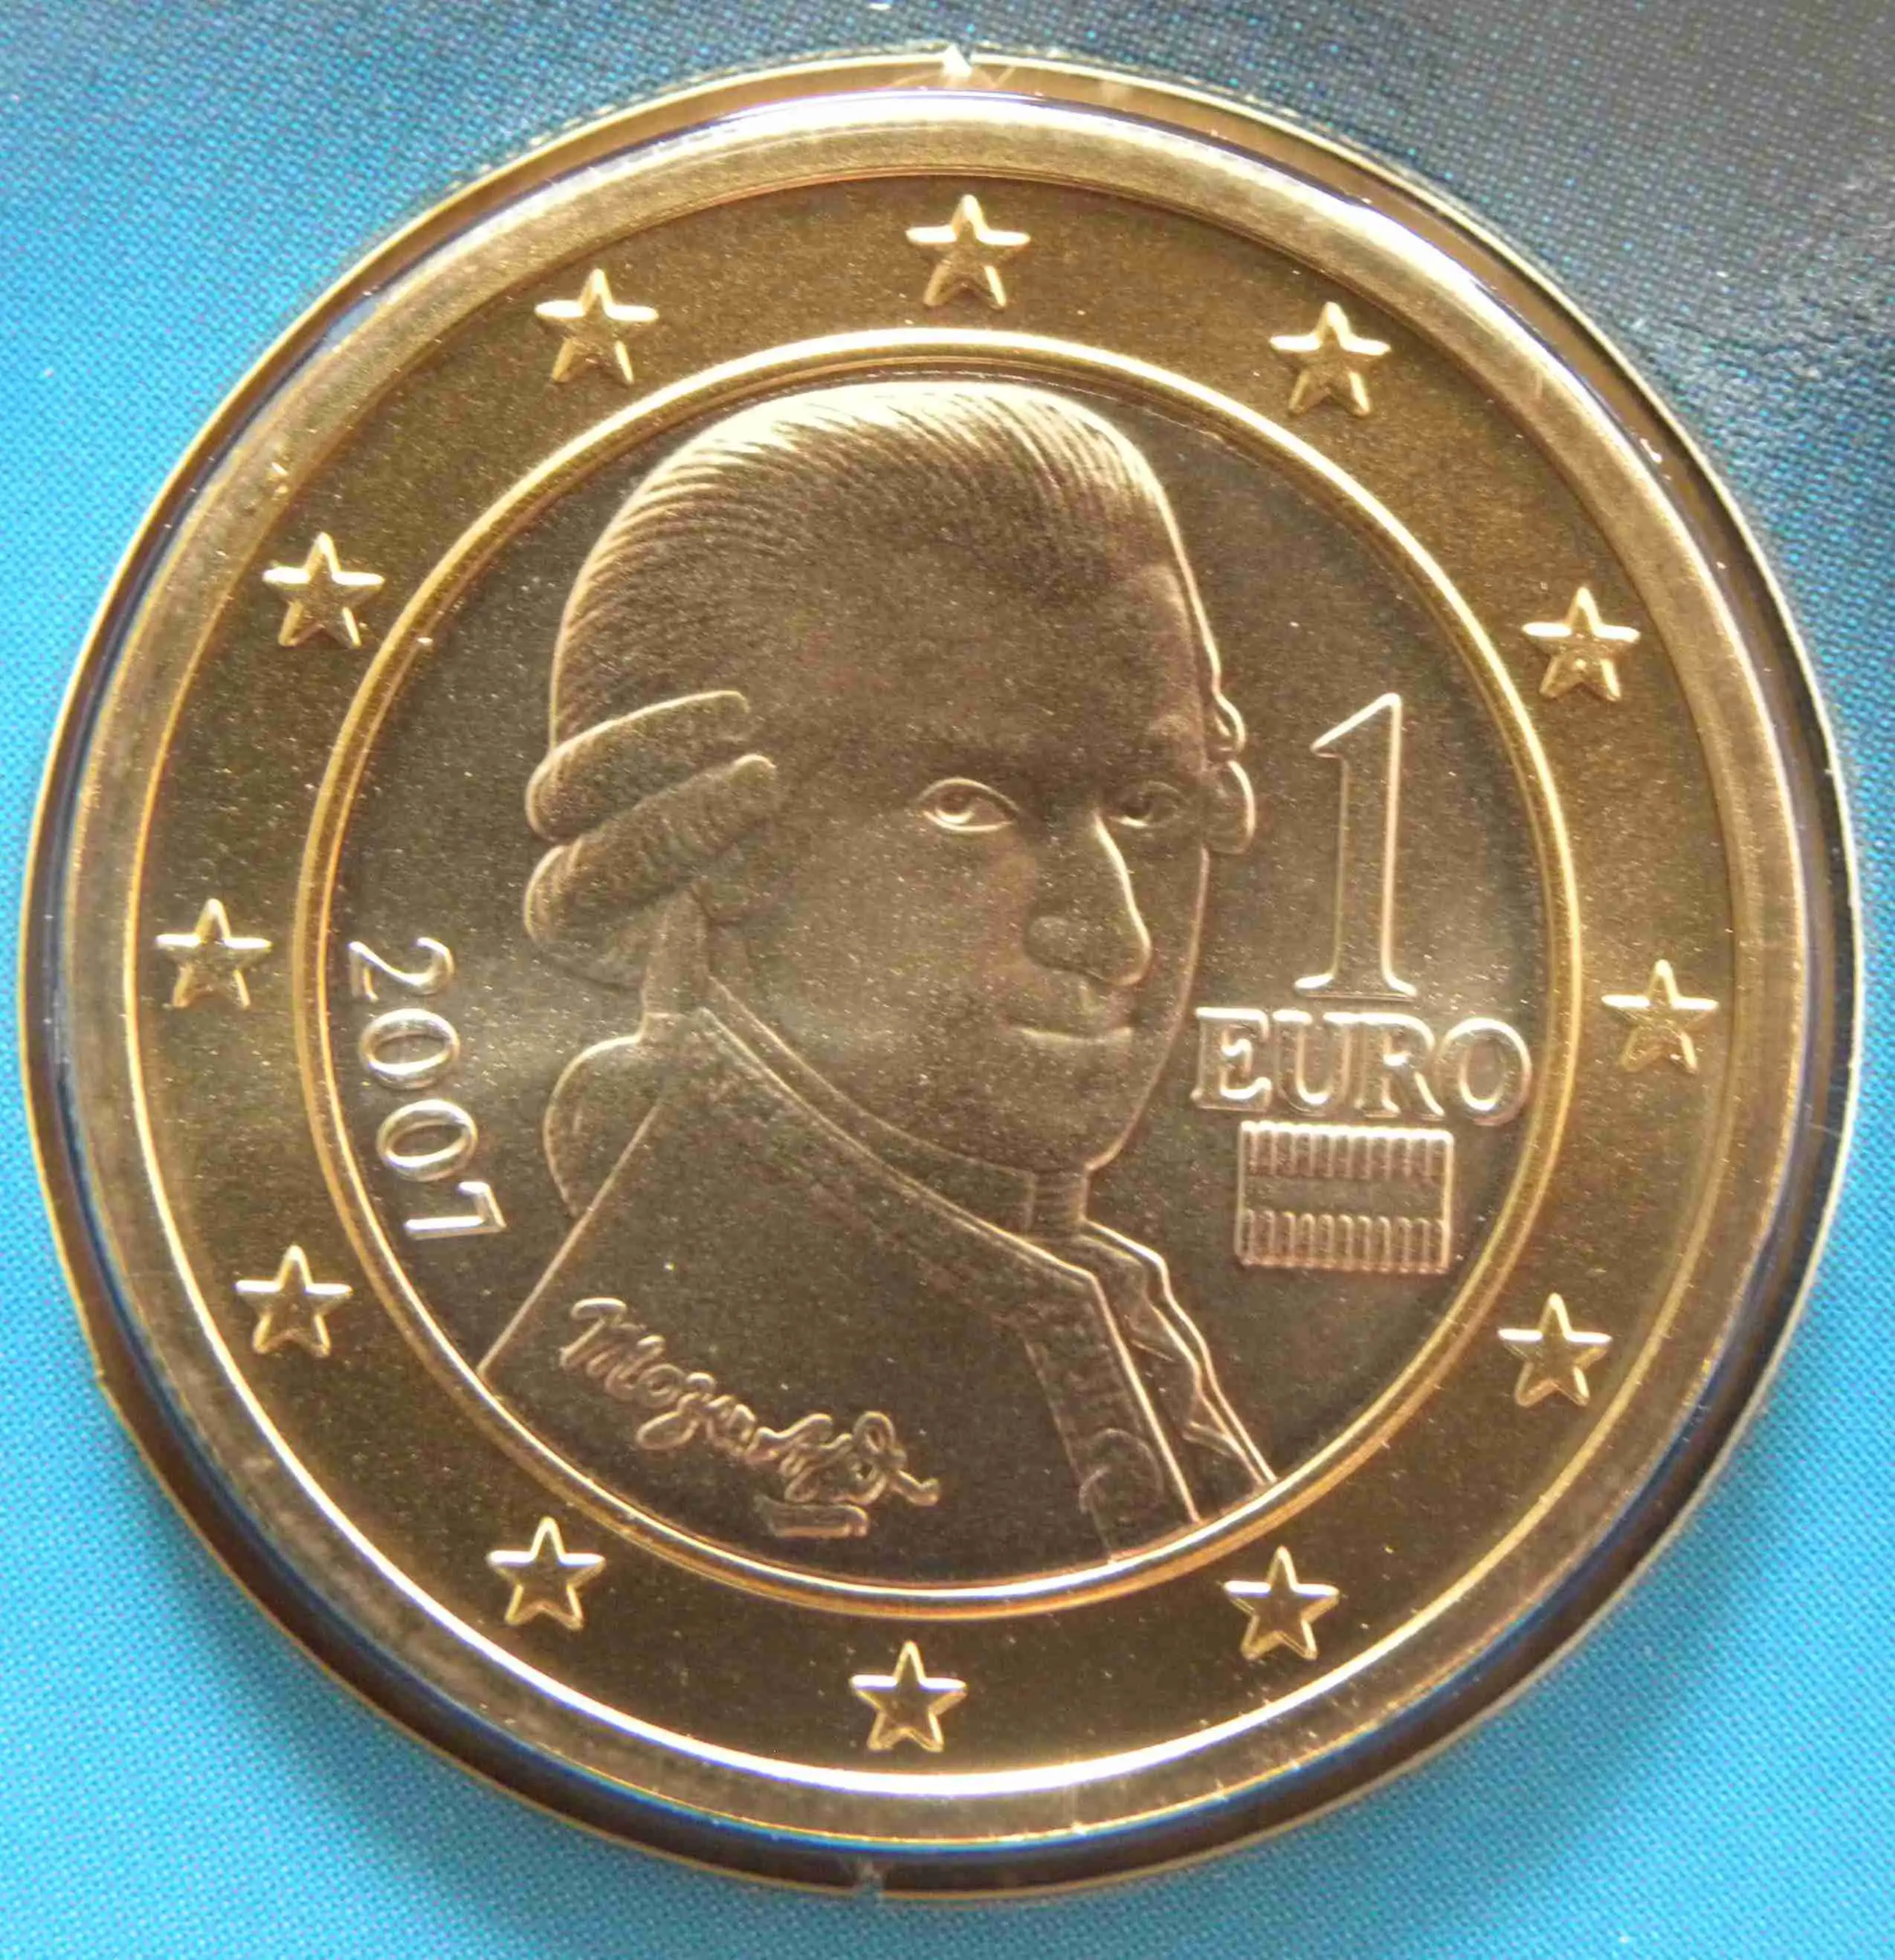 Austria 1 Euro Coin 2007  eurocoins.tv  The Online Eurocoins Catalogue